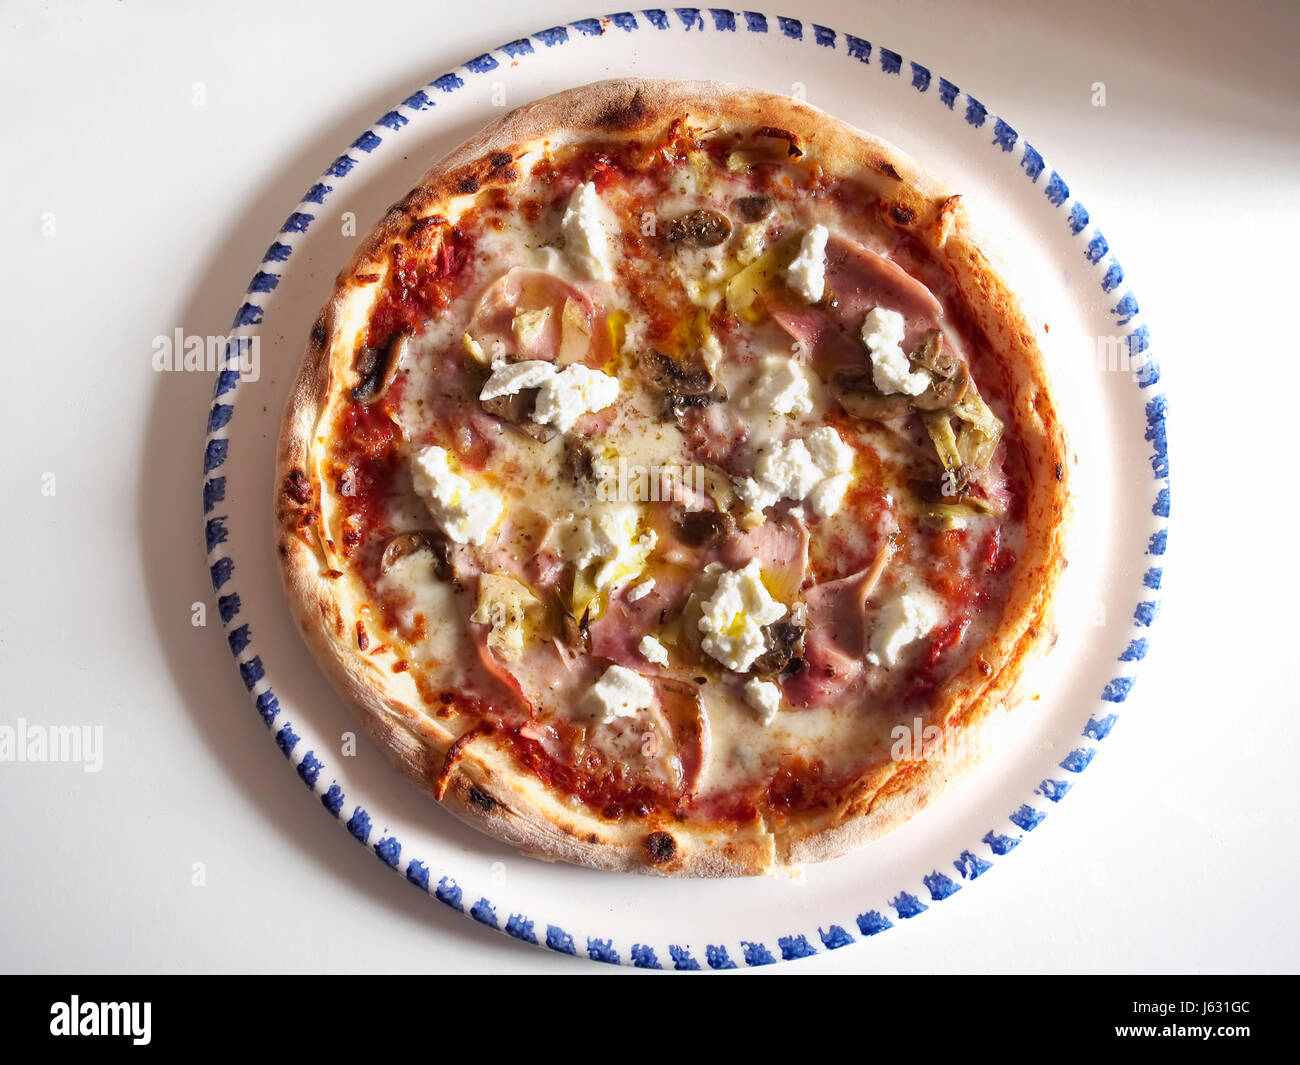 Hausgemachte Pizza Capricciosa Draufsicht In Vegane Version Mit Grausamkeit Kostenlose Zutaten Stockfotografie Alamy